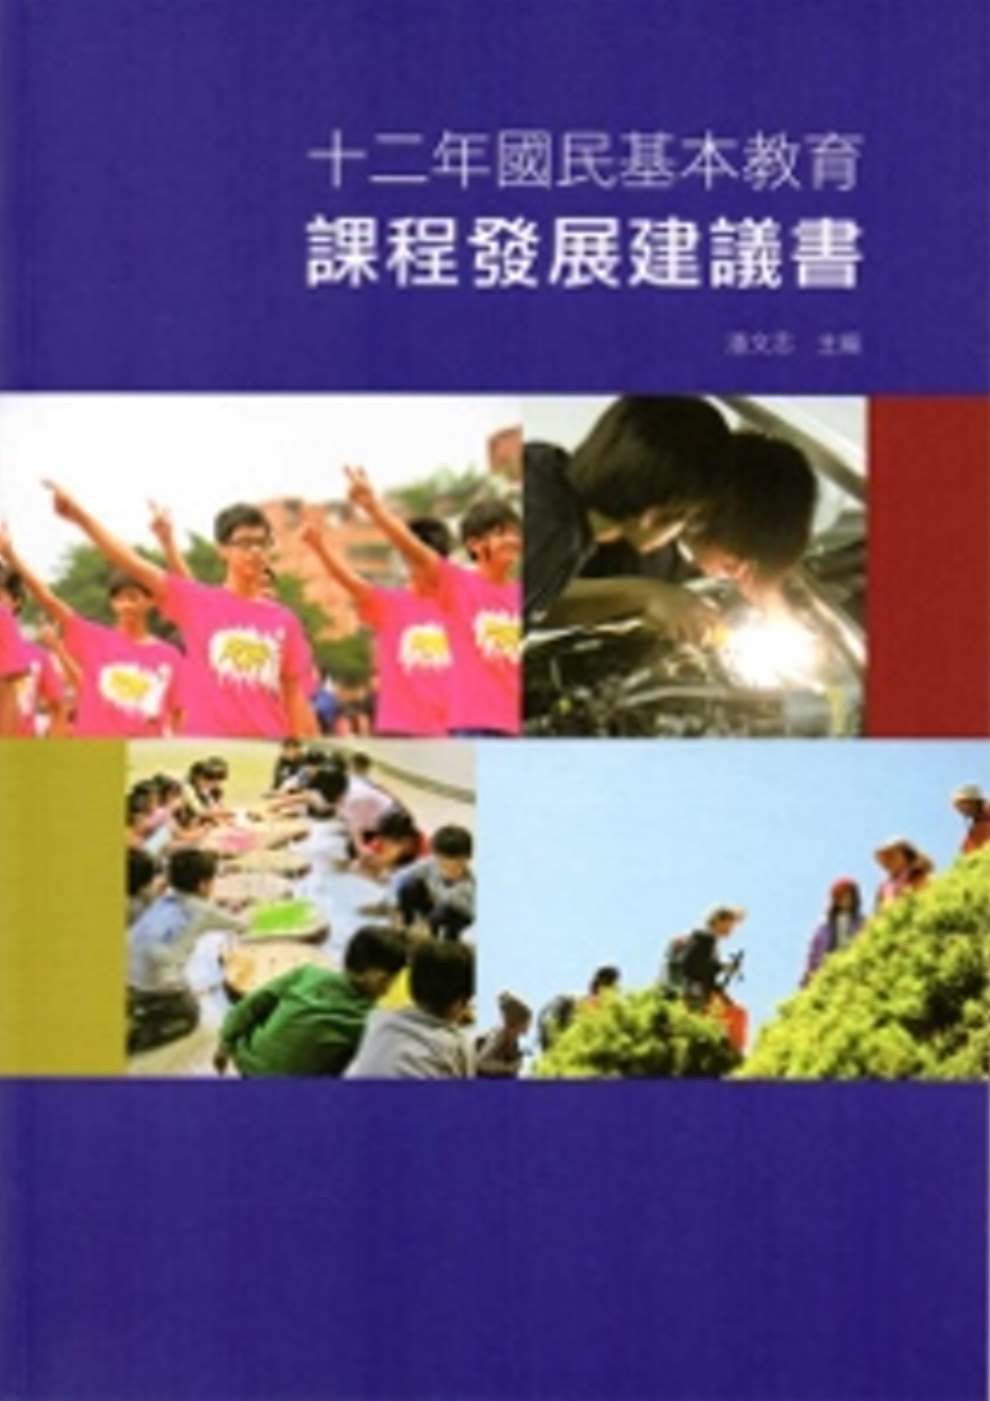 十二年國民基本教育課程發展建議書